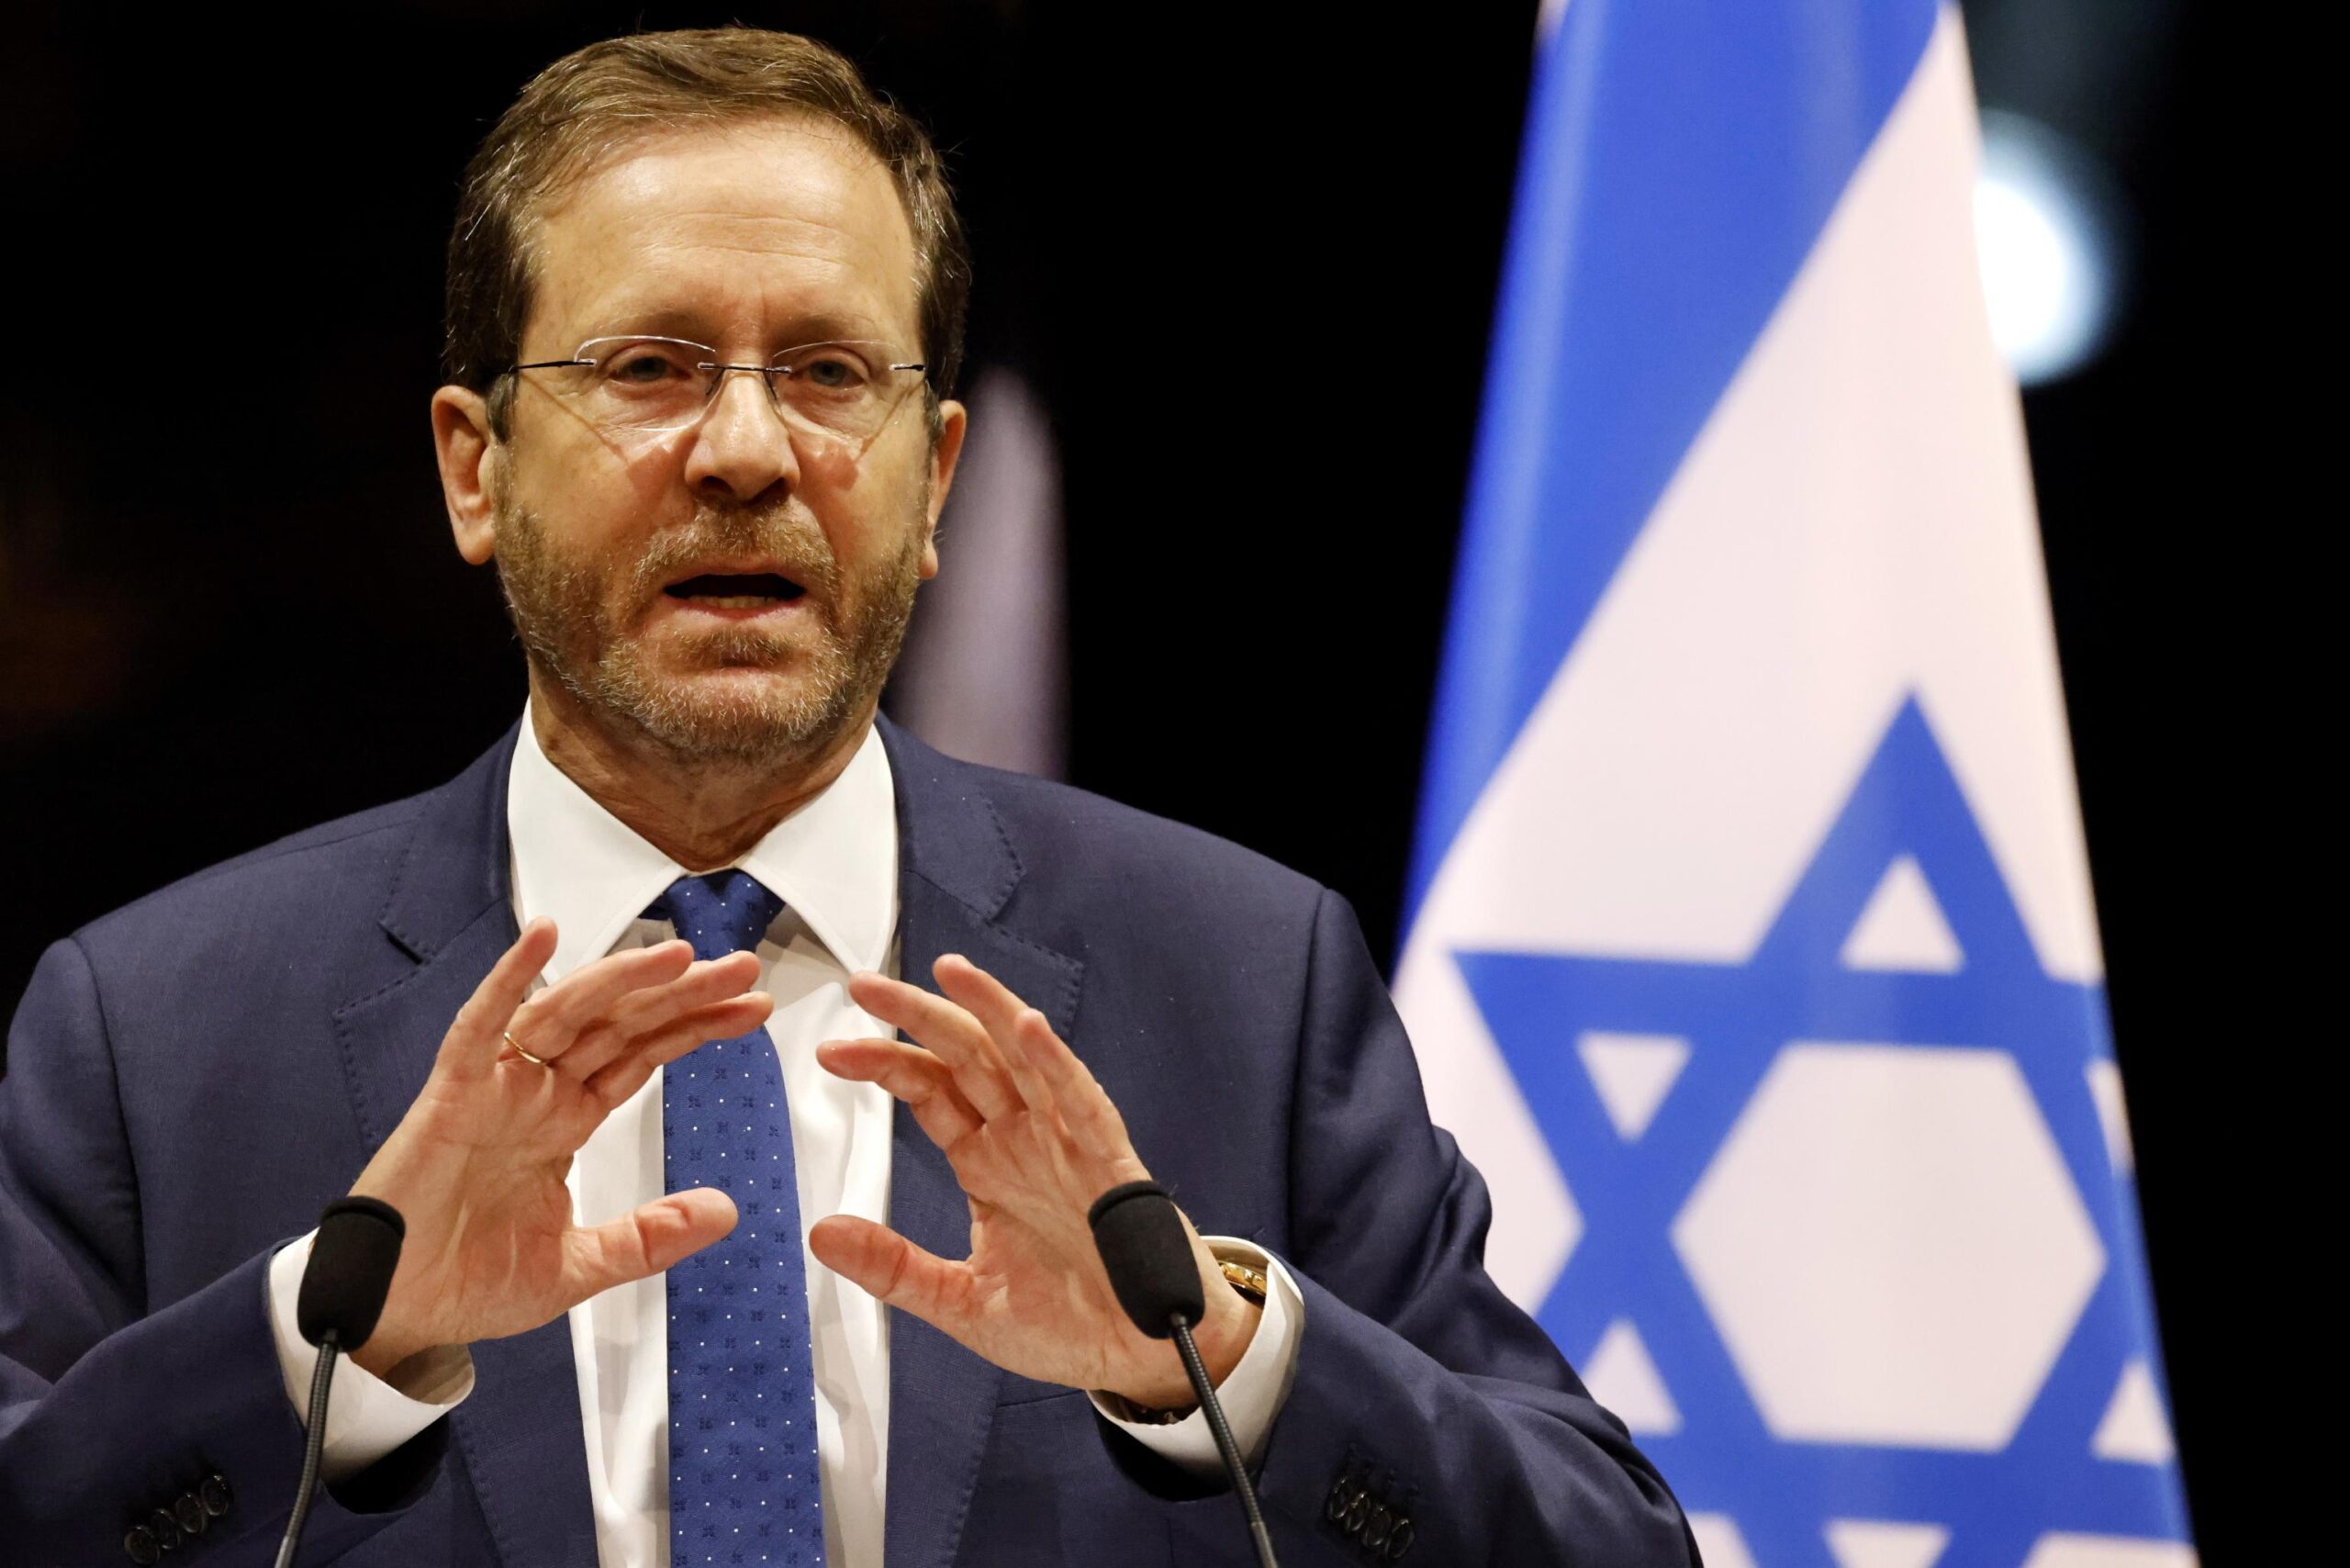 Israele, dopo la riforma congelata il presidente Herzog chiede «negoziati immediati tra le parti»